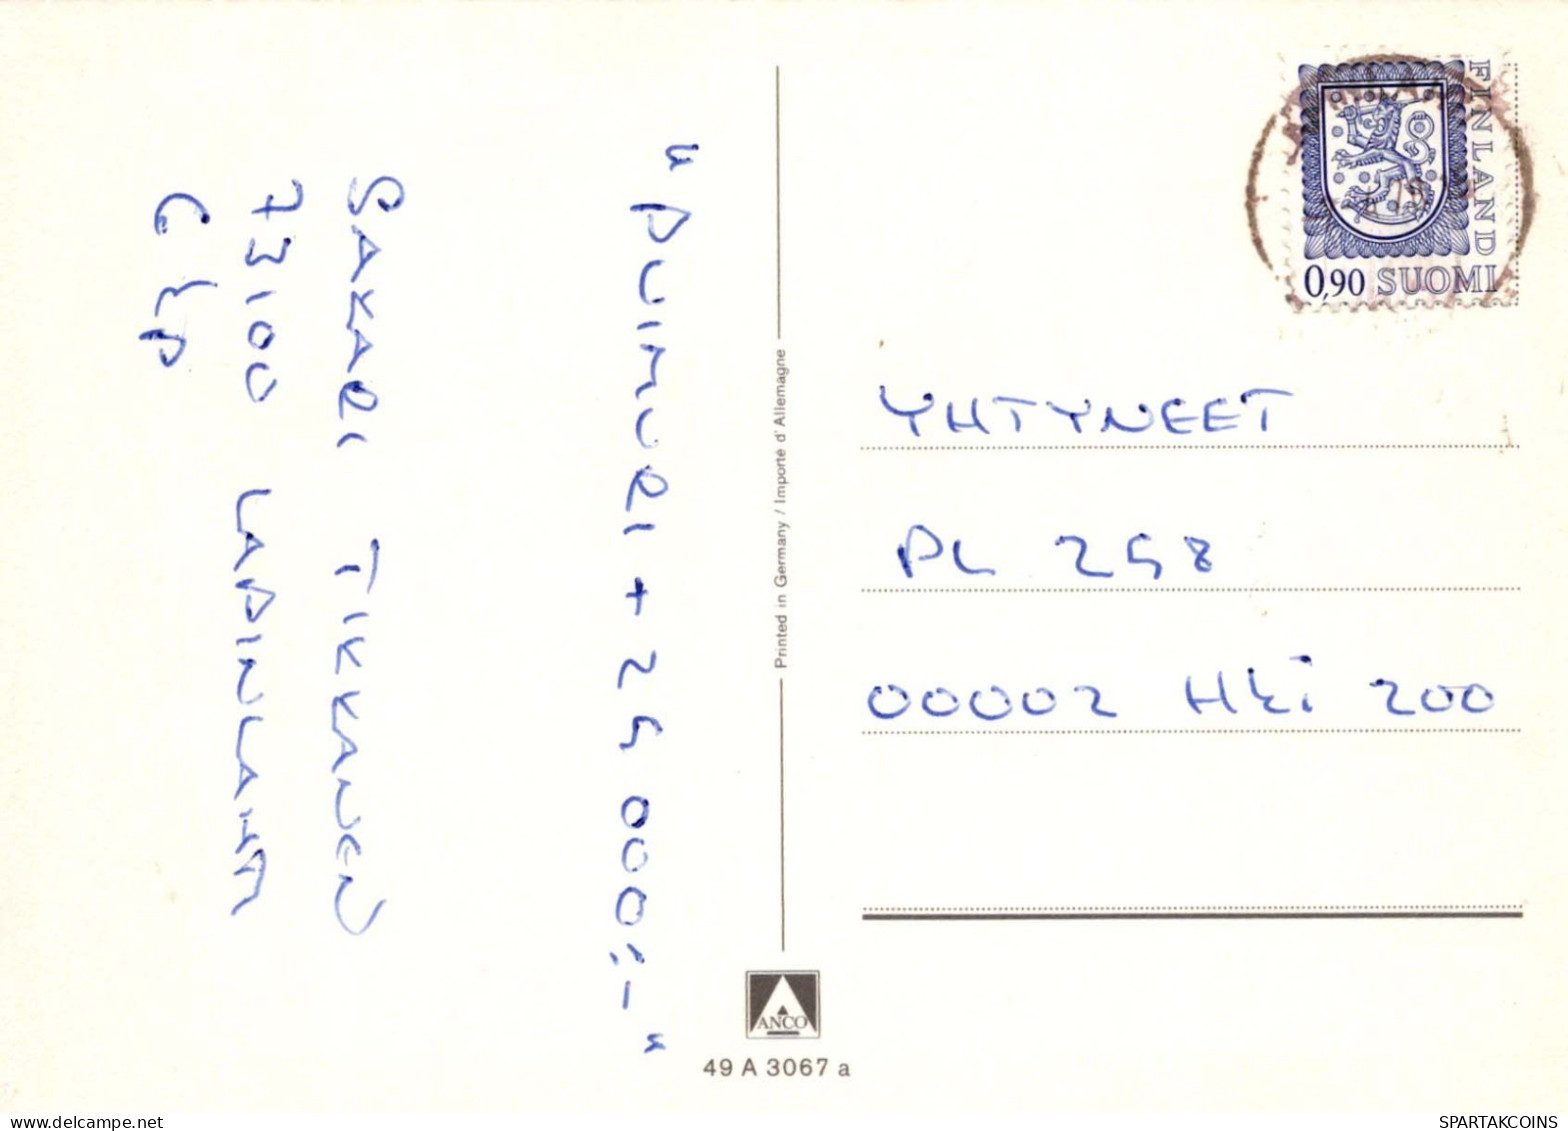 NIÑOS Retrato Vintage Tarjeta Postal CPSM #PBV089.A - Portretten